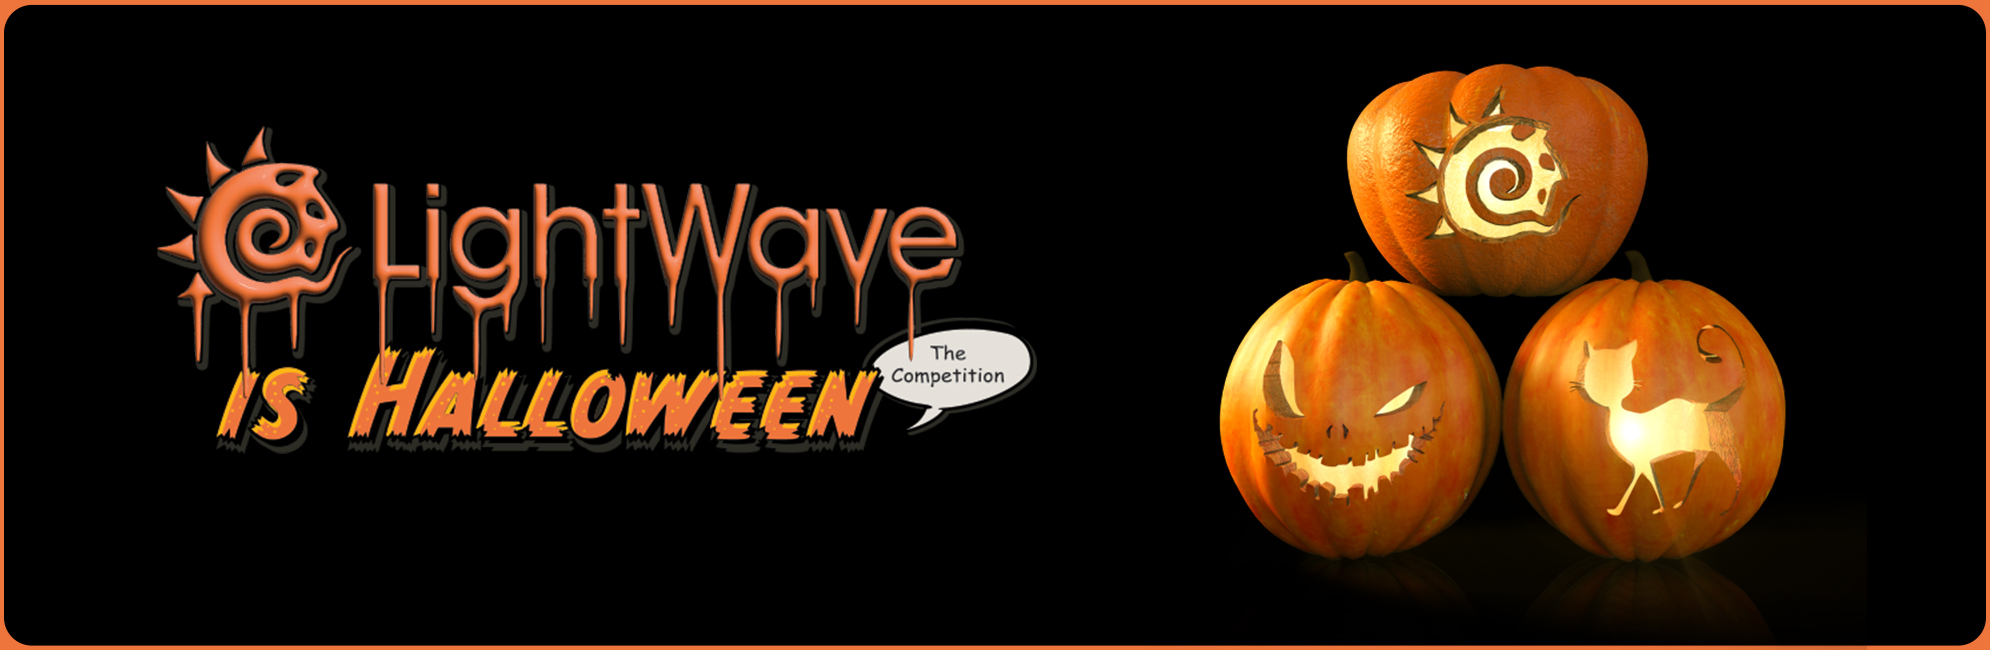 Nome: LightWave is Halloween  LightWave 3D Promo 20320918.jpg
Visite: 65
Dimensione: 387.4 KB